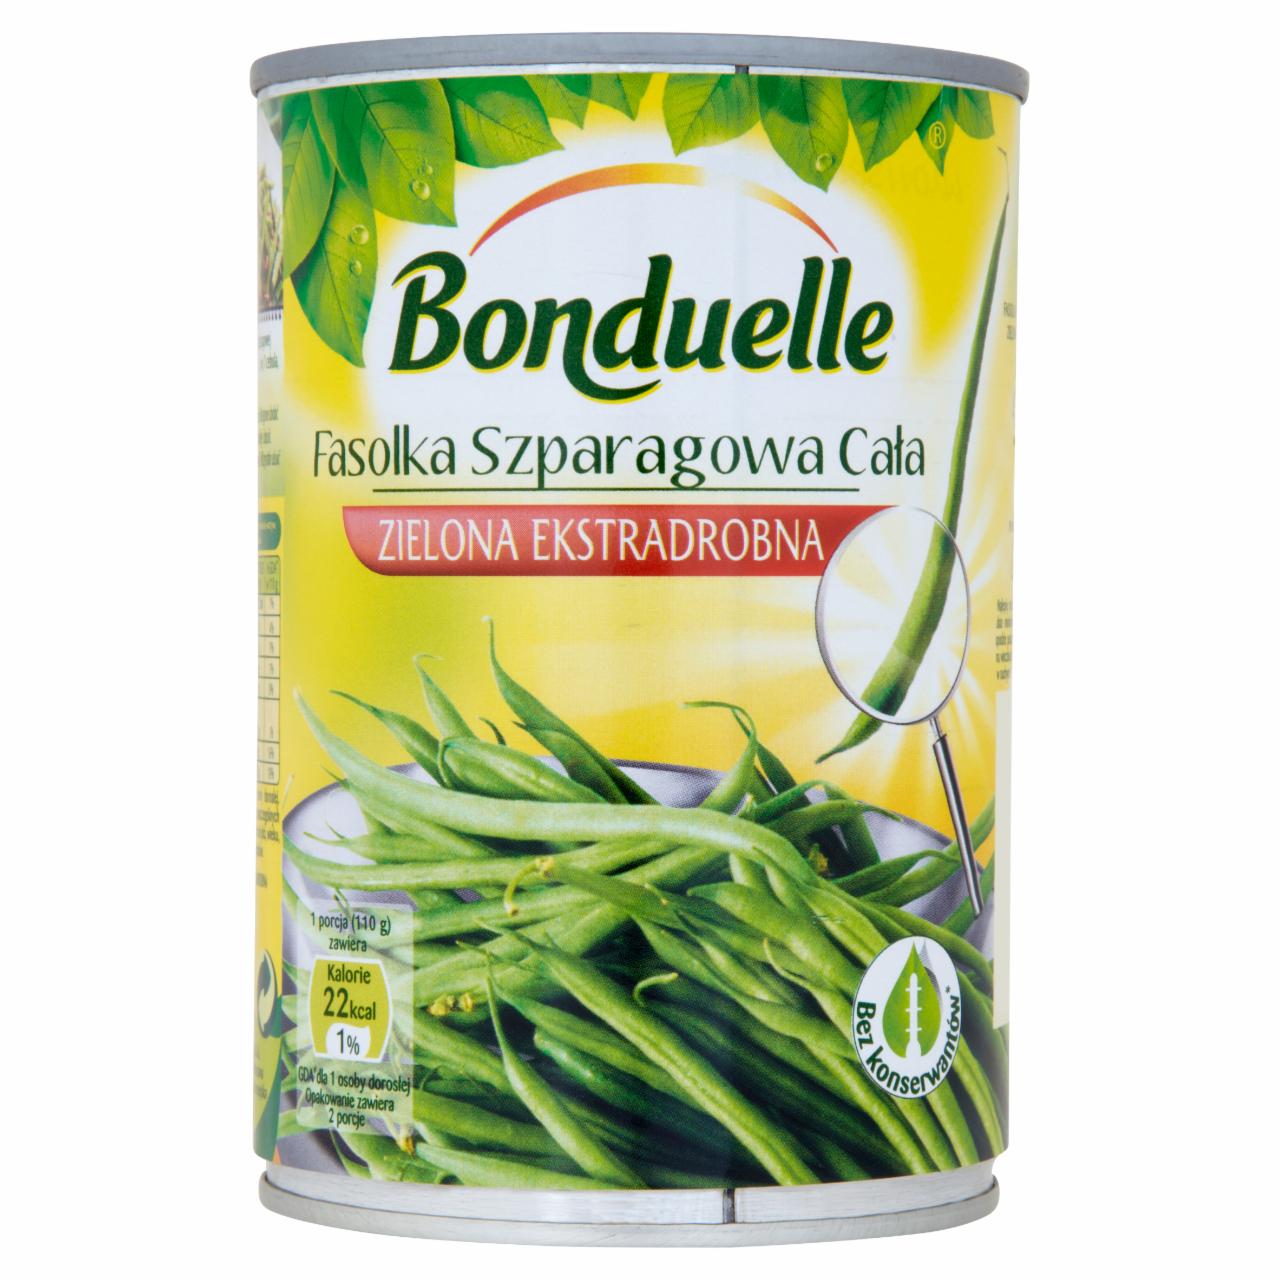 Zdjęcia - Bonduelle Fasolka szparagowa cała zielona ekstradrobna 400 g